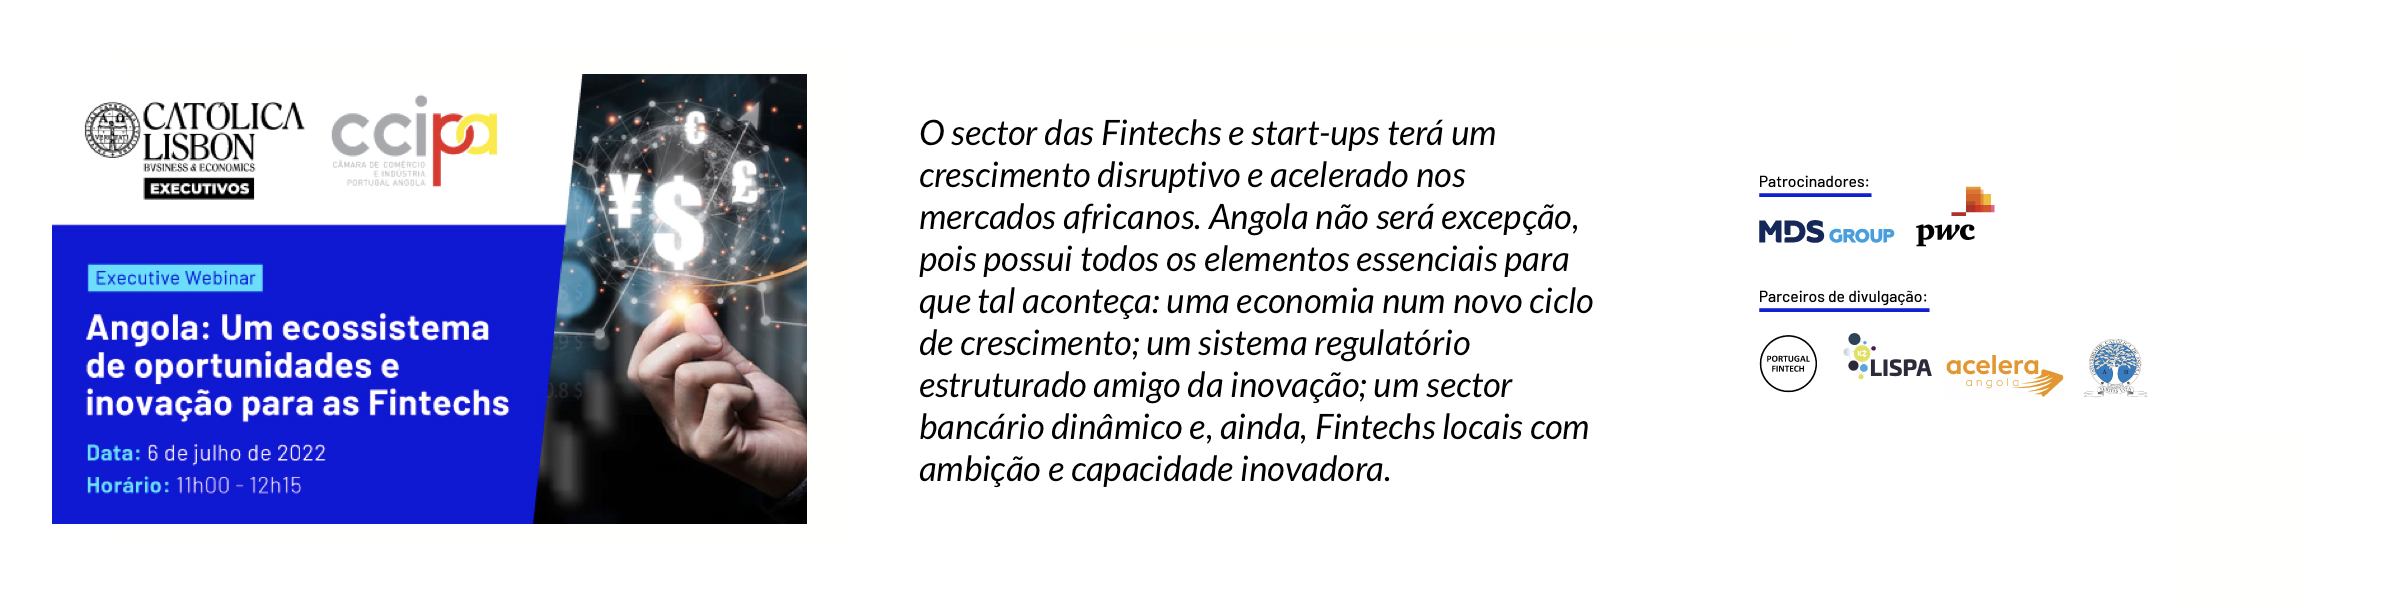 Executive Webinar | Angola: Um ecossistema de oportunidades e inovação para as Fintechs